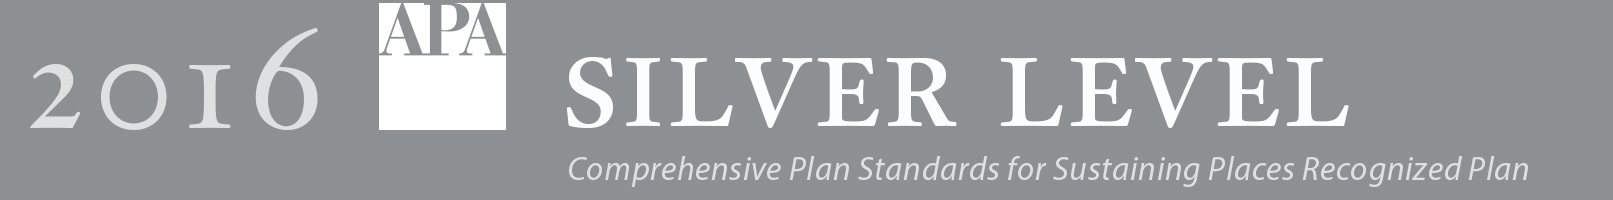 2016 APA silver level level award banner